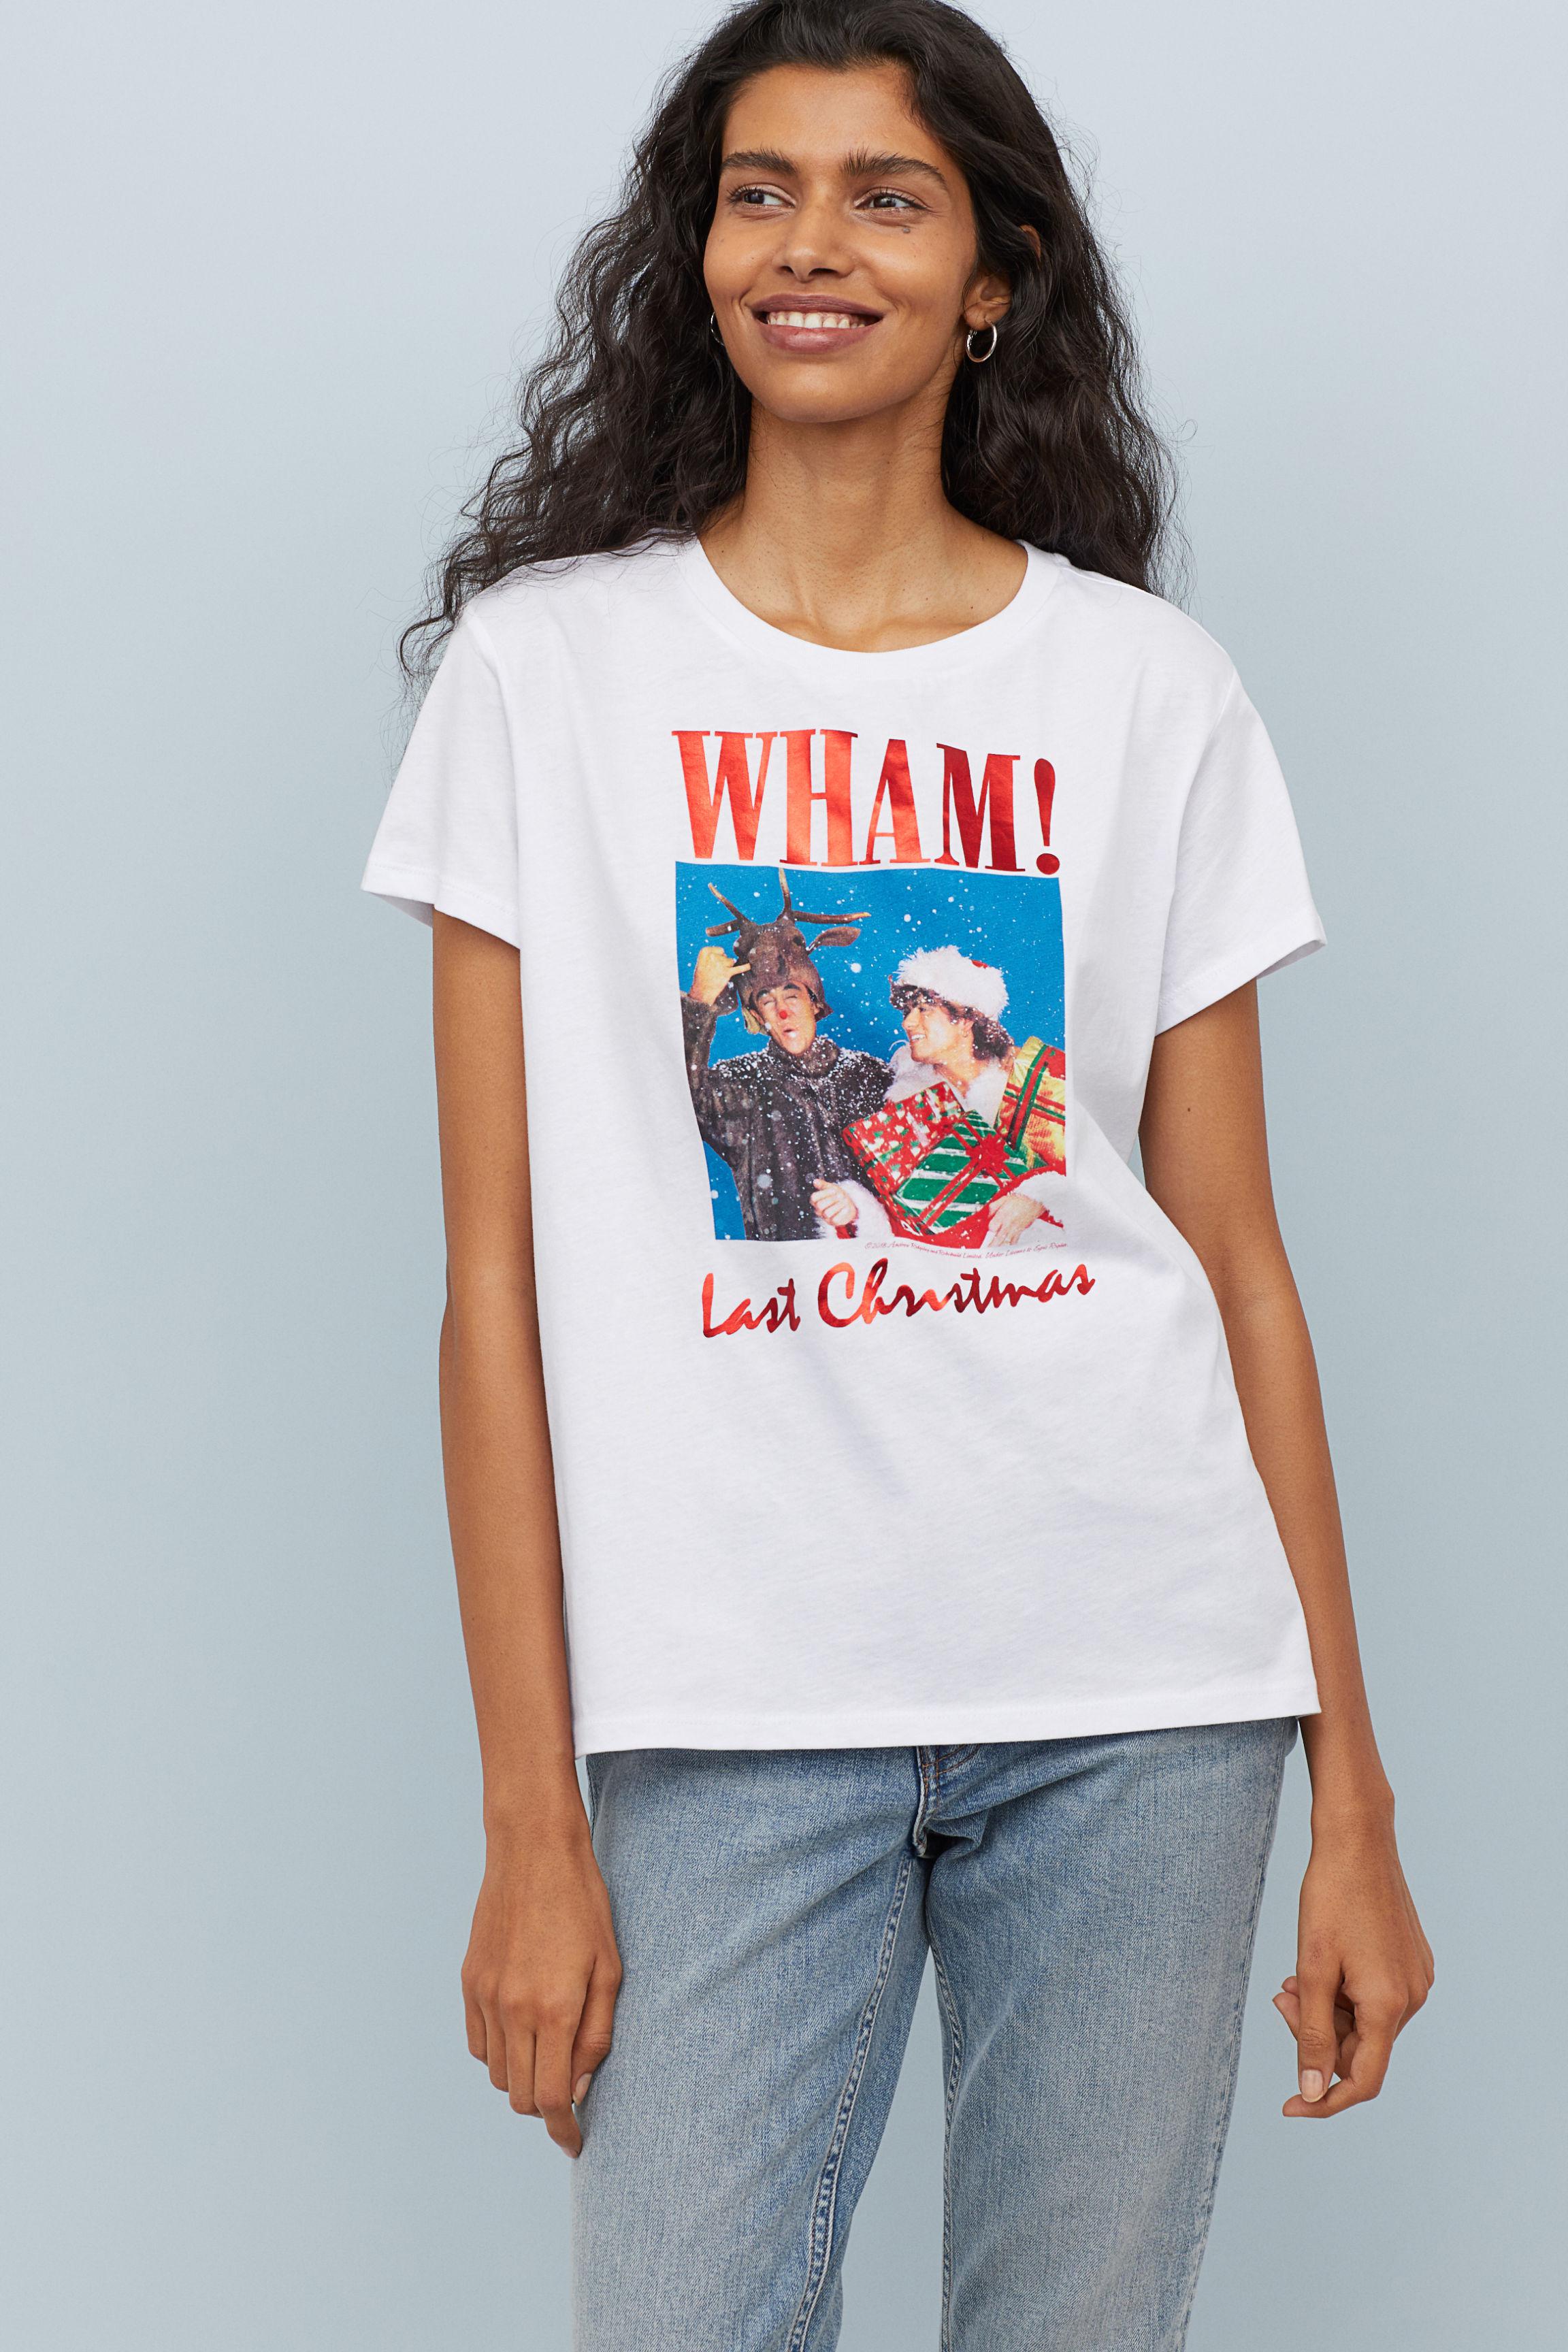 H&m T Shirt Wham Factory Sale, 53% OFF | centro-innato.com